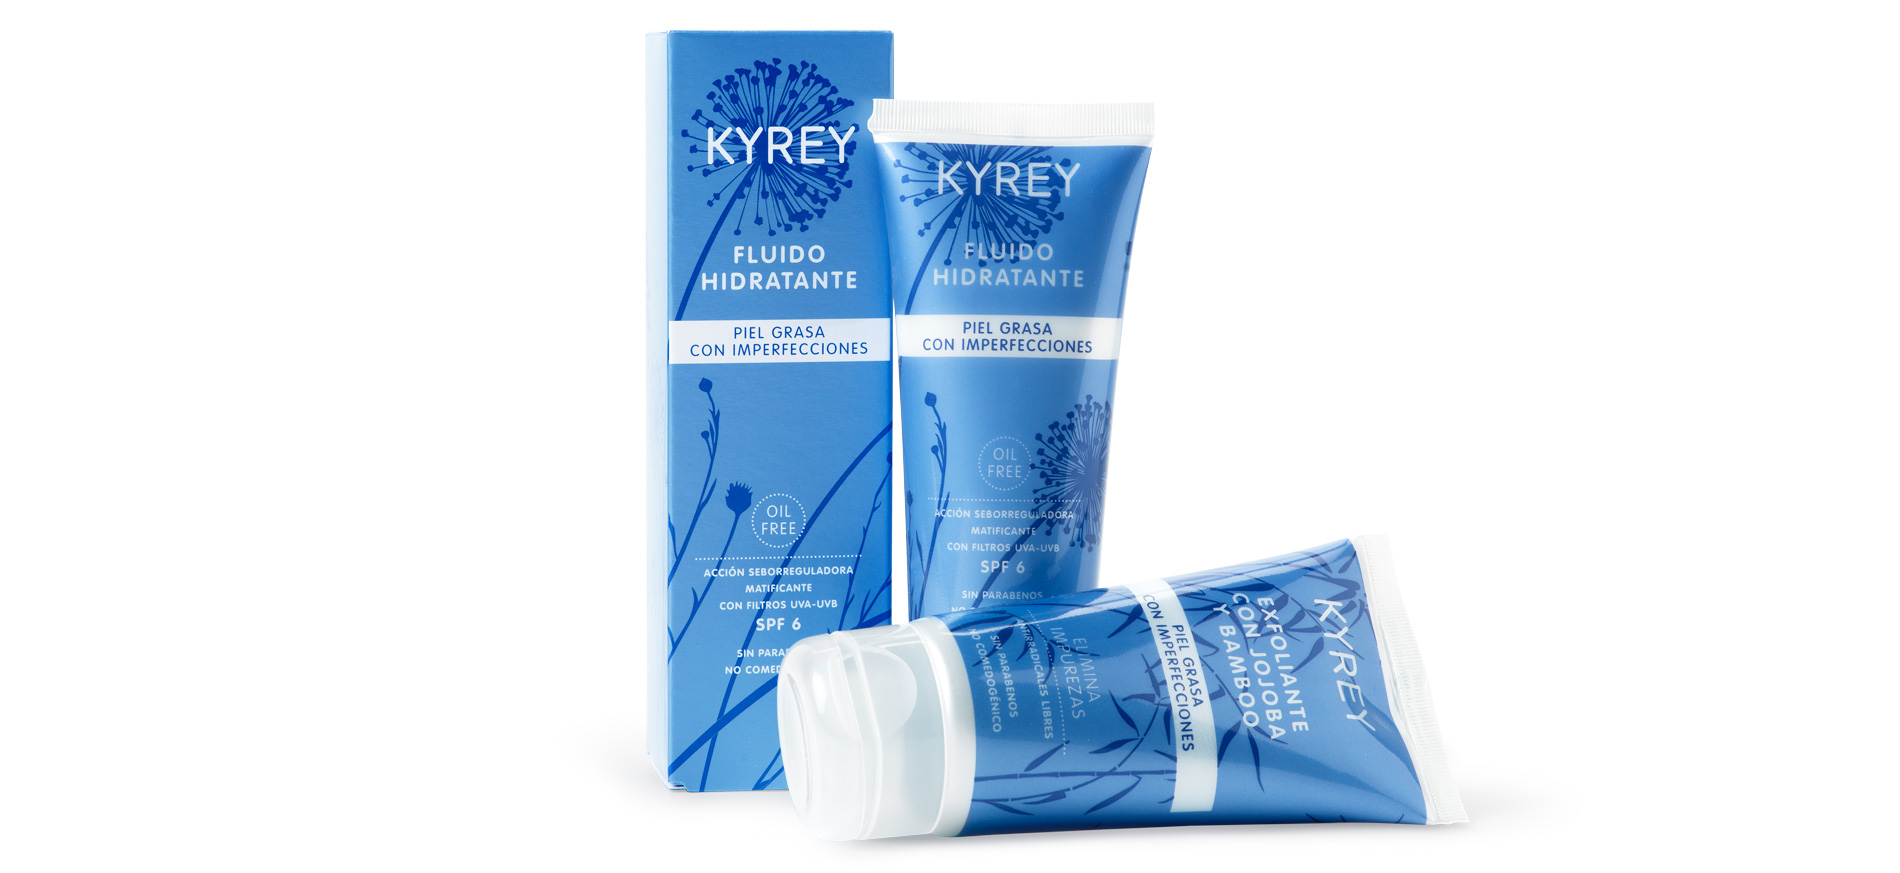 Diseño de Packaging de Cremas Kyrey de Supermercados Consum por Puigdemont Roca Design Agency